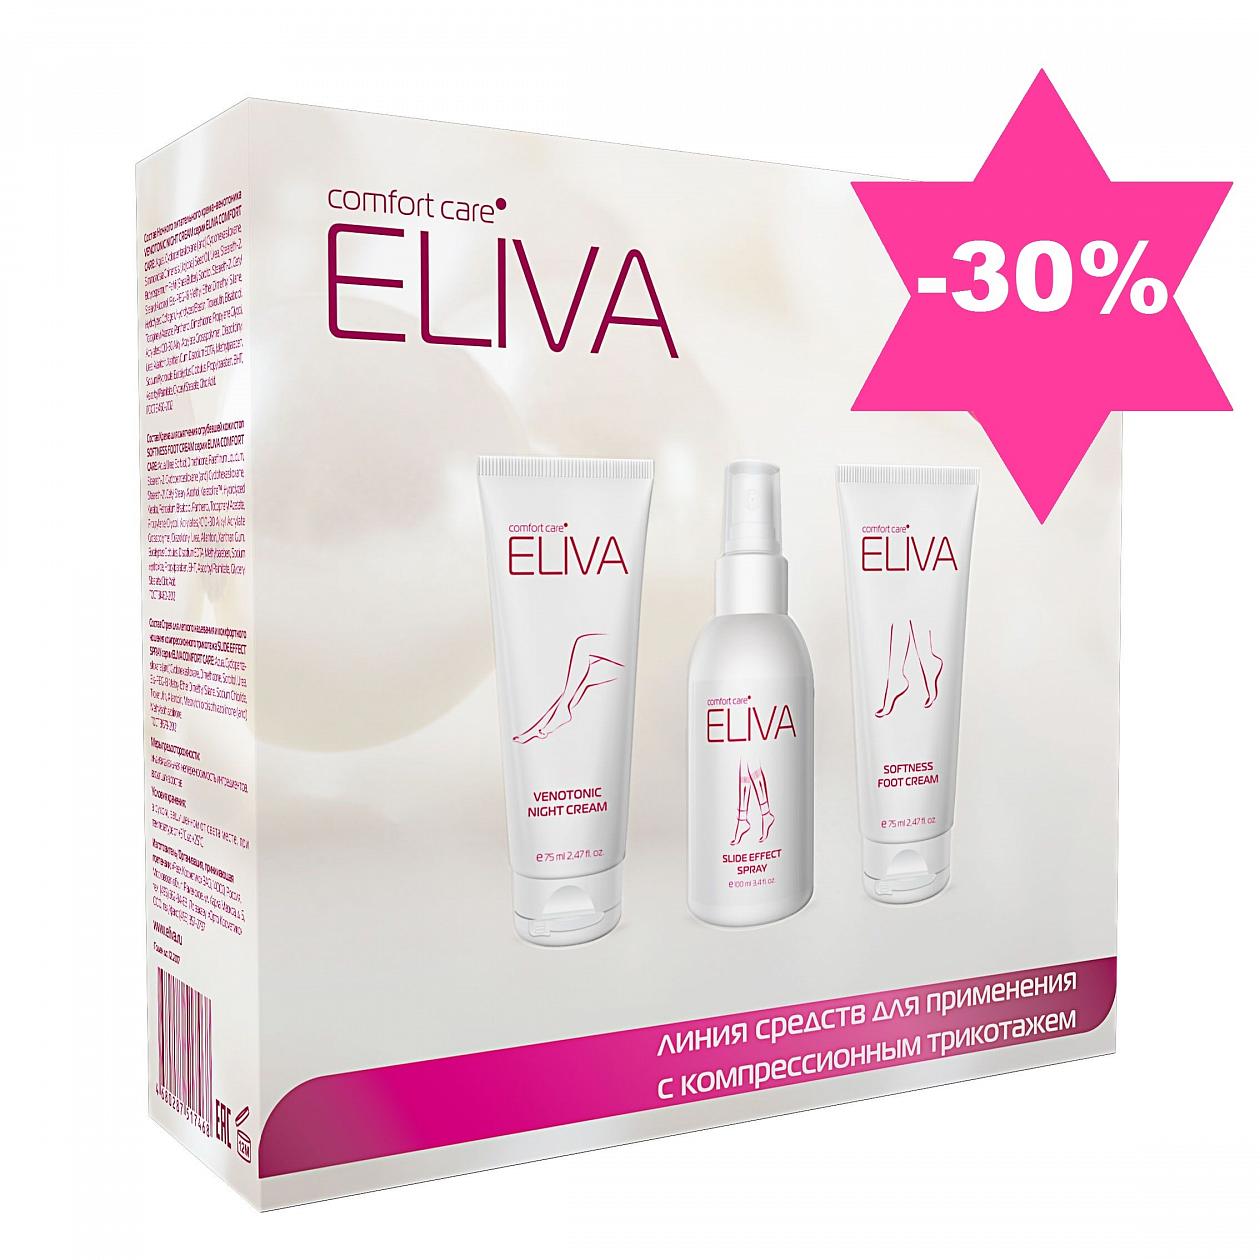 Успей купить наборы ELIVA -30%